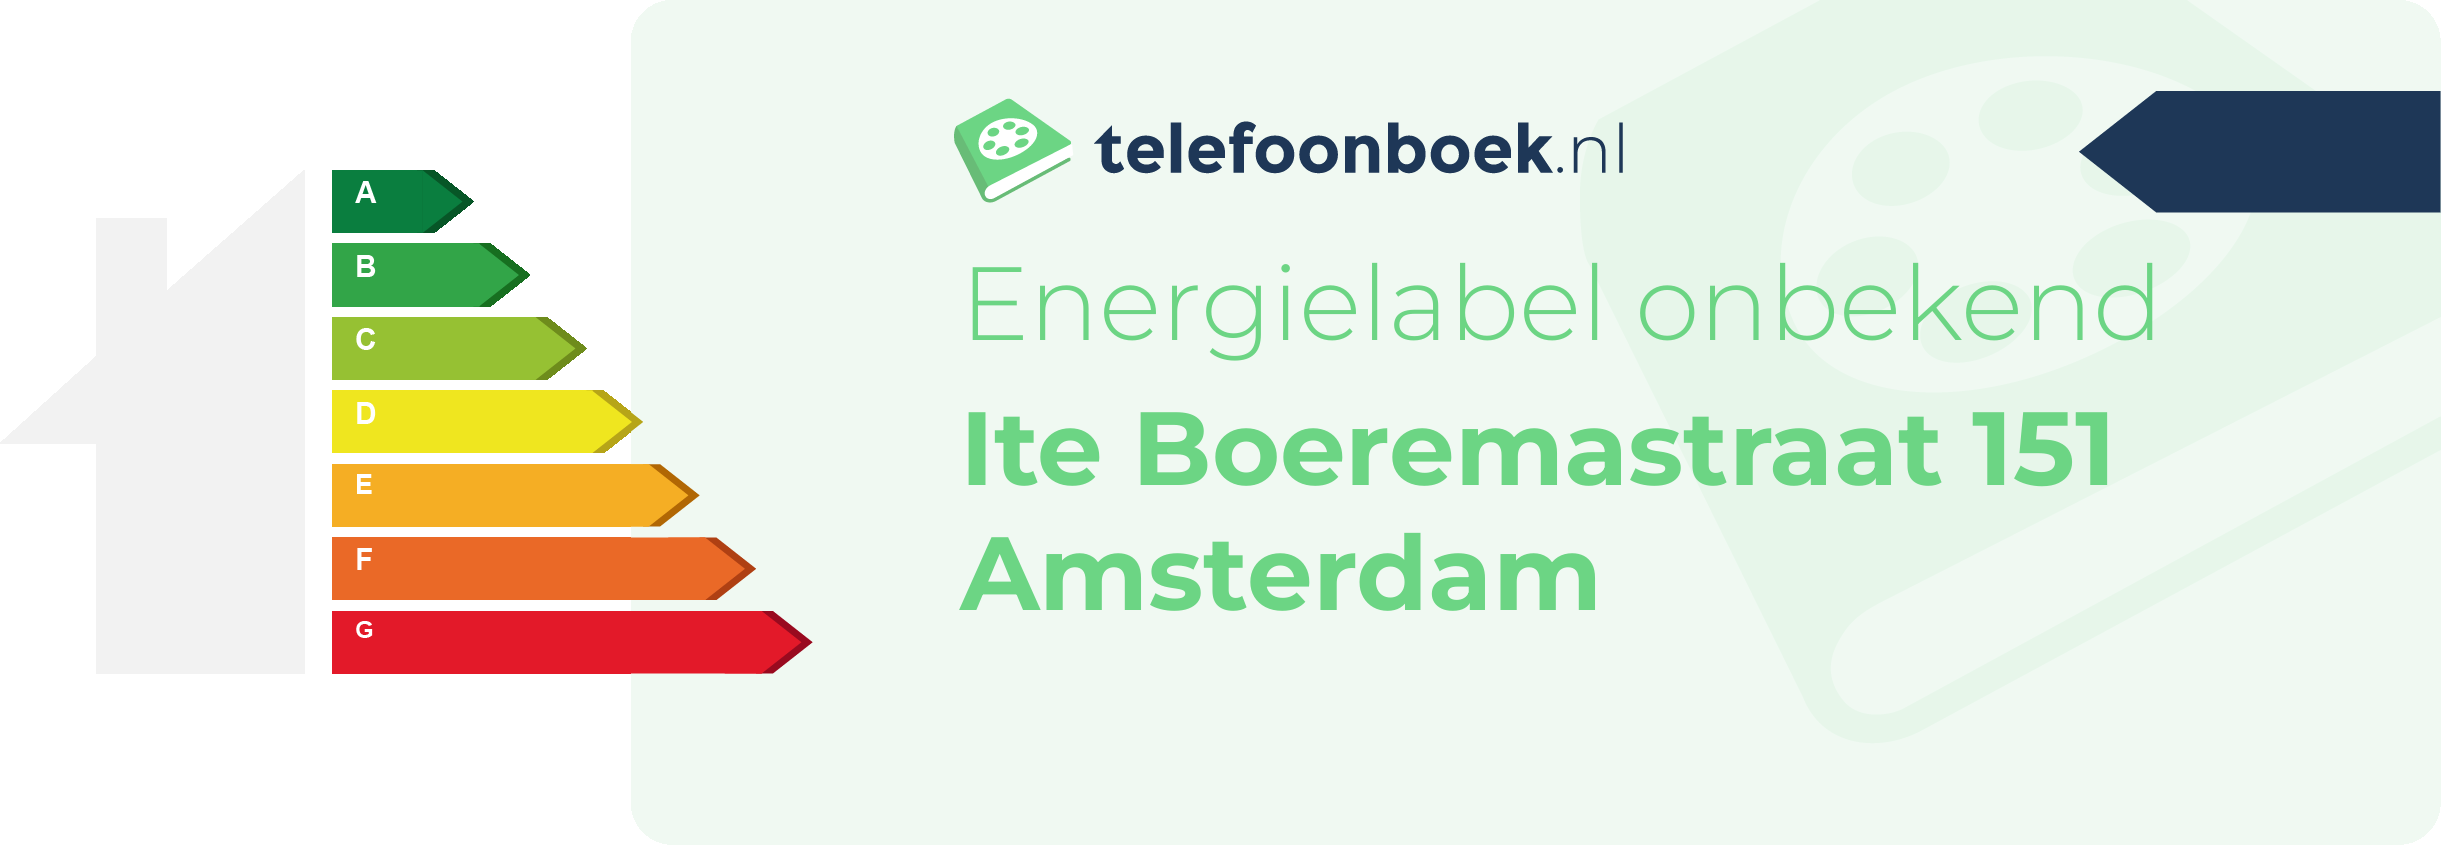 Energielabel Ite Boeremastraat 151 Amsterdam